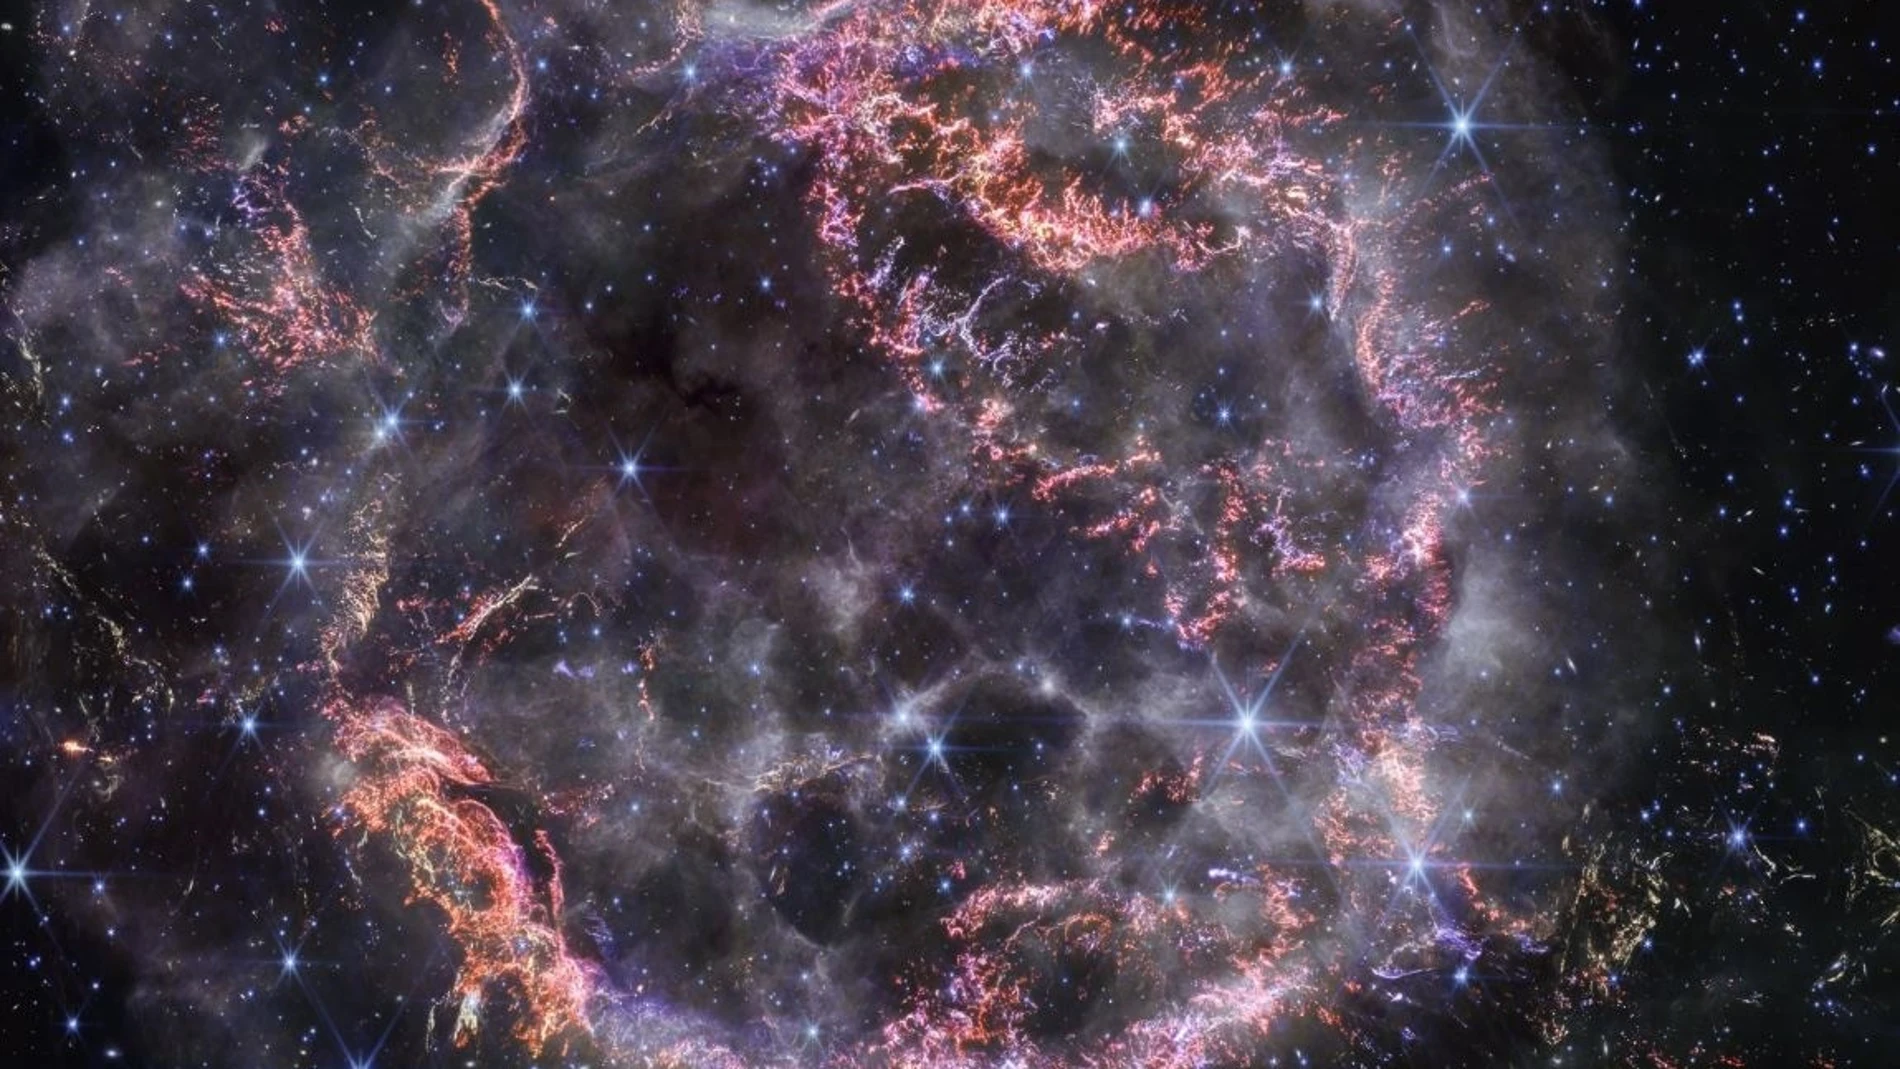 La nueva visión de Casiopea A (Cas A) del Telescopio Espacial James Webb en luz infrarroja cercana está dando a los astrónomos pistas sobre los procesos dinámicos que ocurren dentro del remanente de supernova